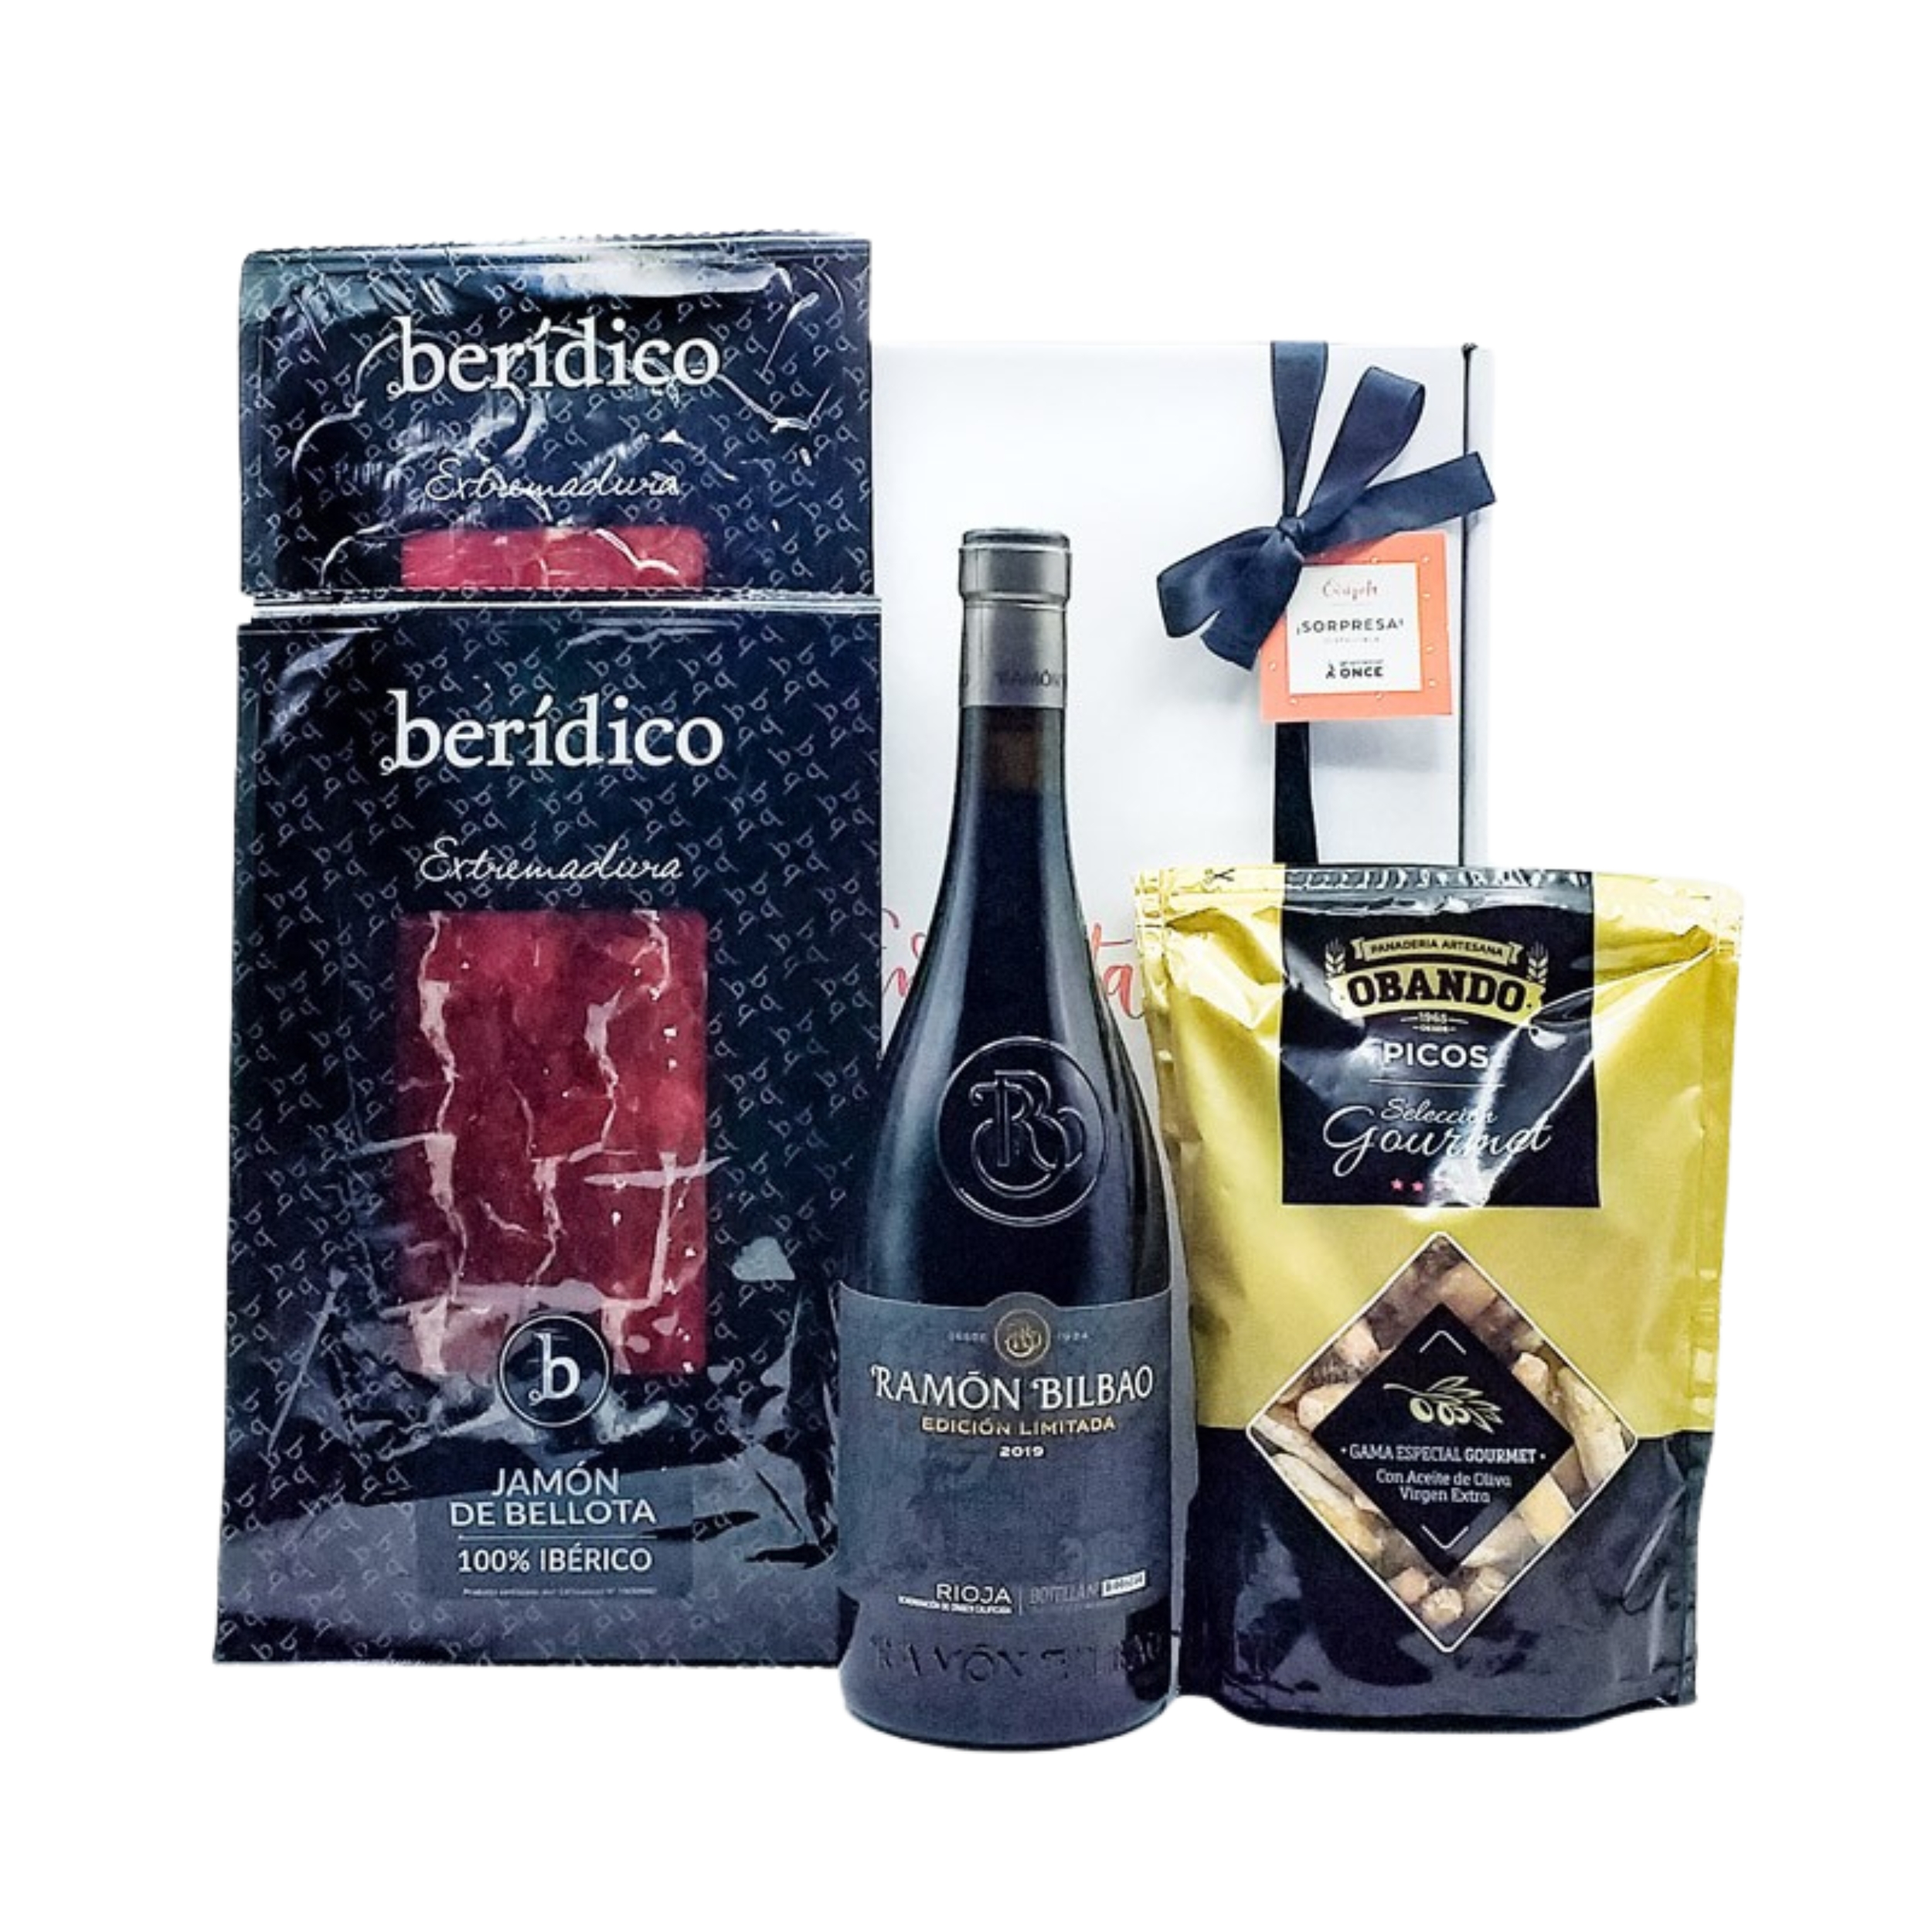 Imagen de cesta blanca con lazo negro, con vino de la marca Ramón Bilbao, bolsa de picos gourmet de la marca Obando, sobre de lomo y jamón ibérico de la marca Berídico image number null